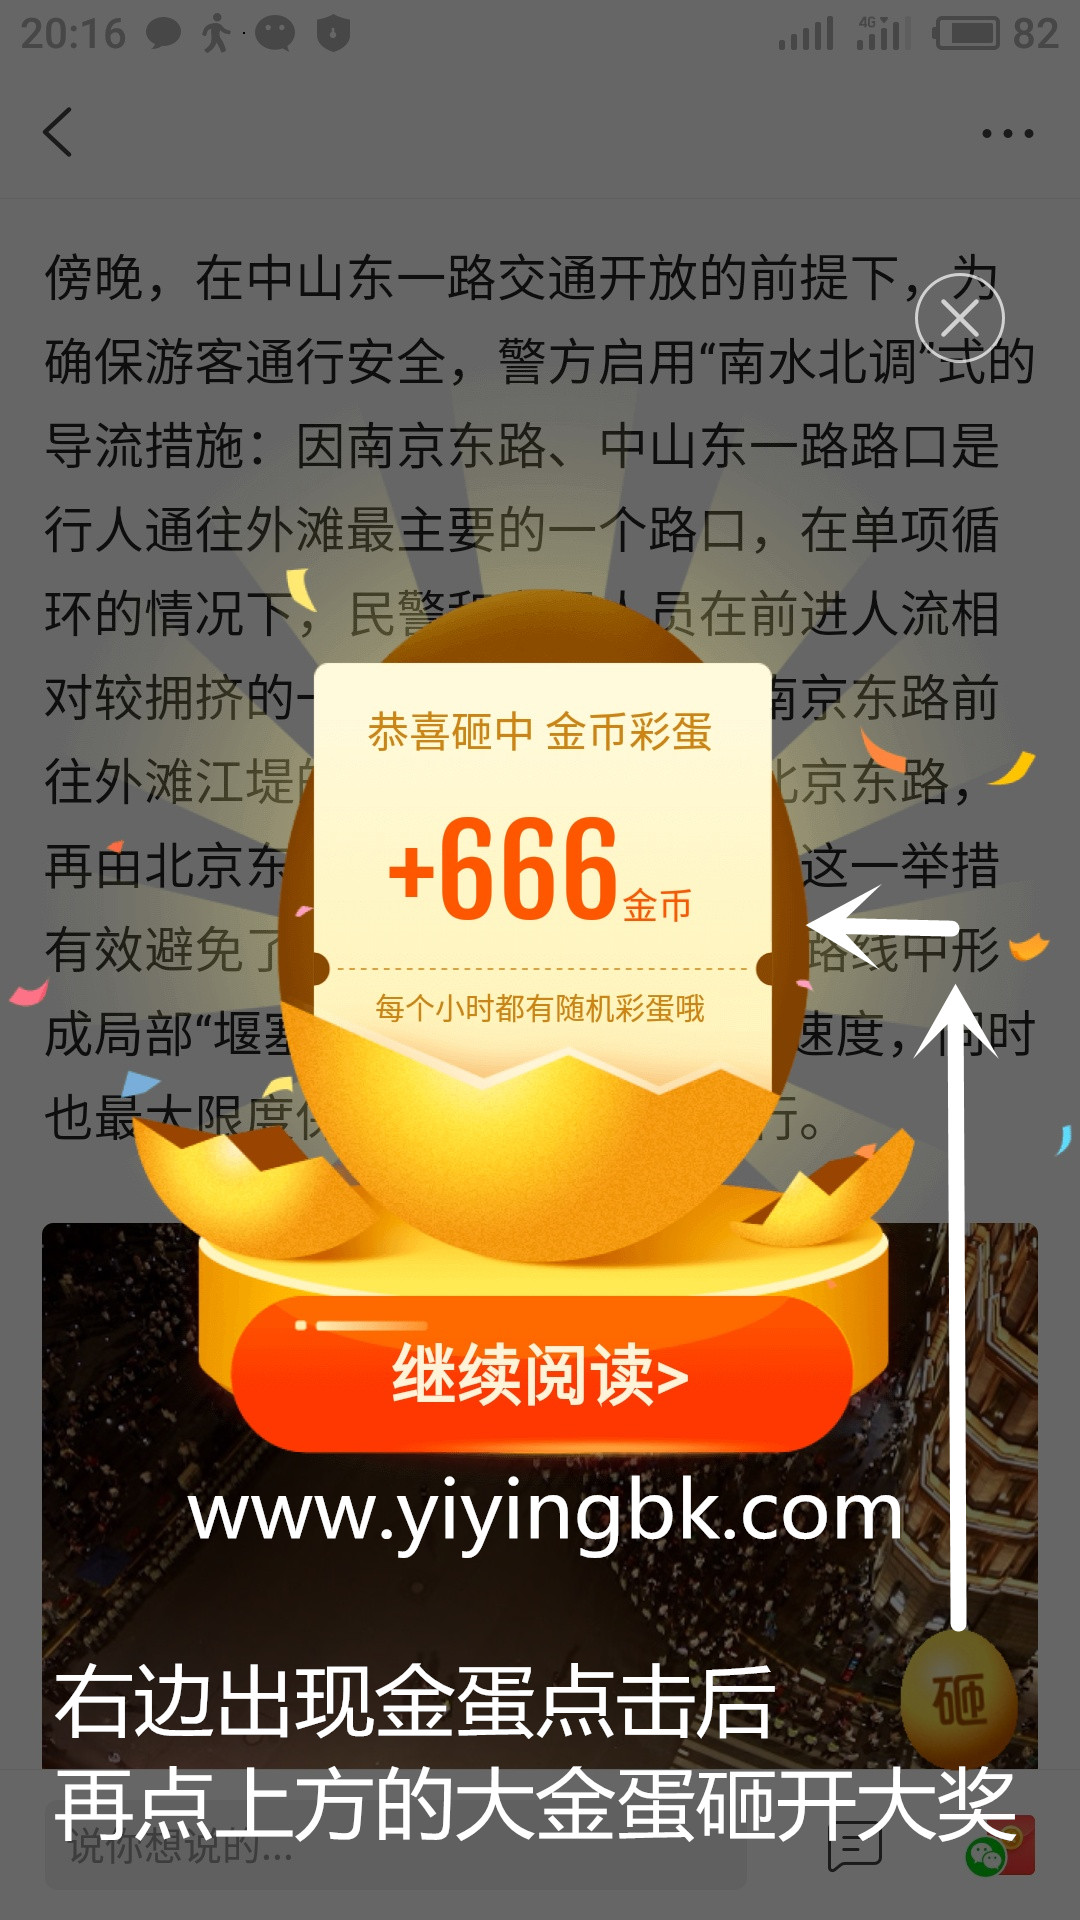 砸金蛋奖励666金币，可以兑换现金红包提现快速到账。